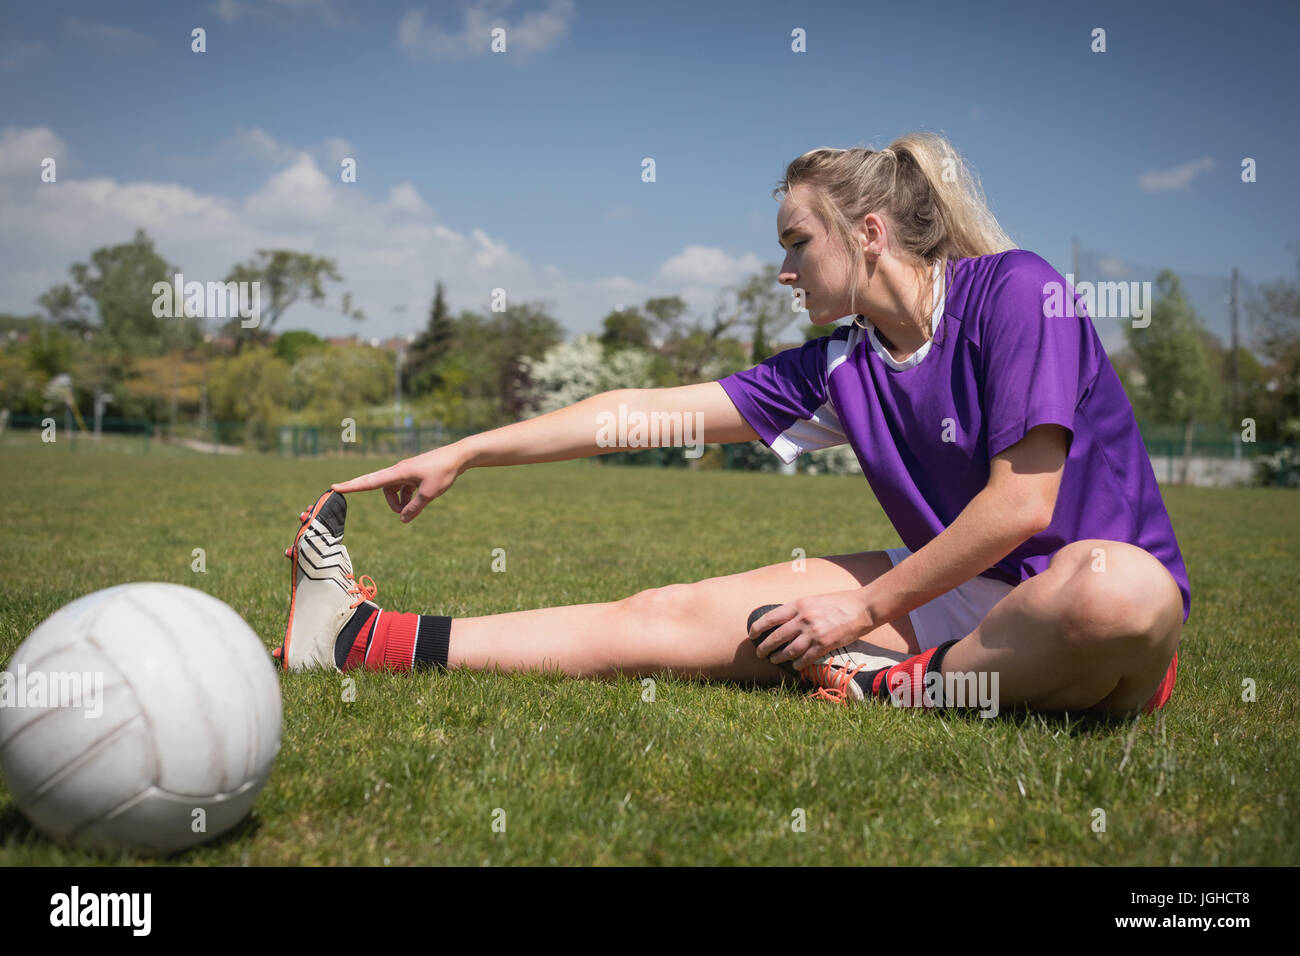 Toute la longueur du joueur de soccer féminin par ball stretching sur terrain Banque D'Images